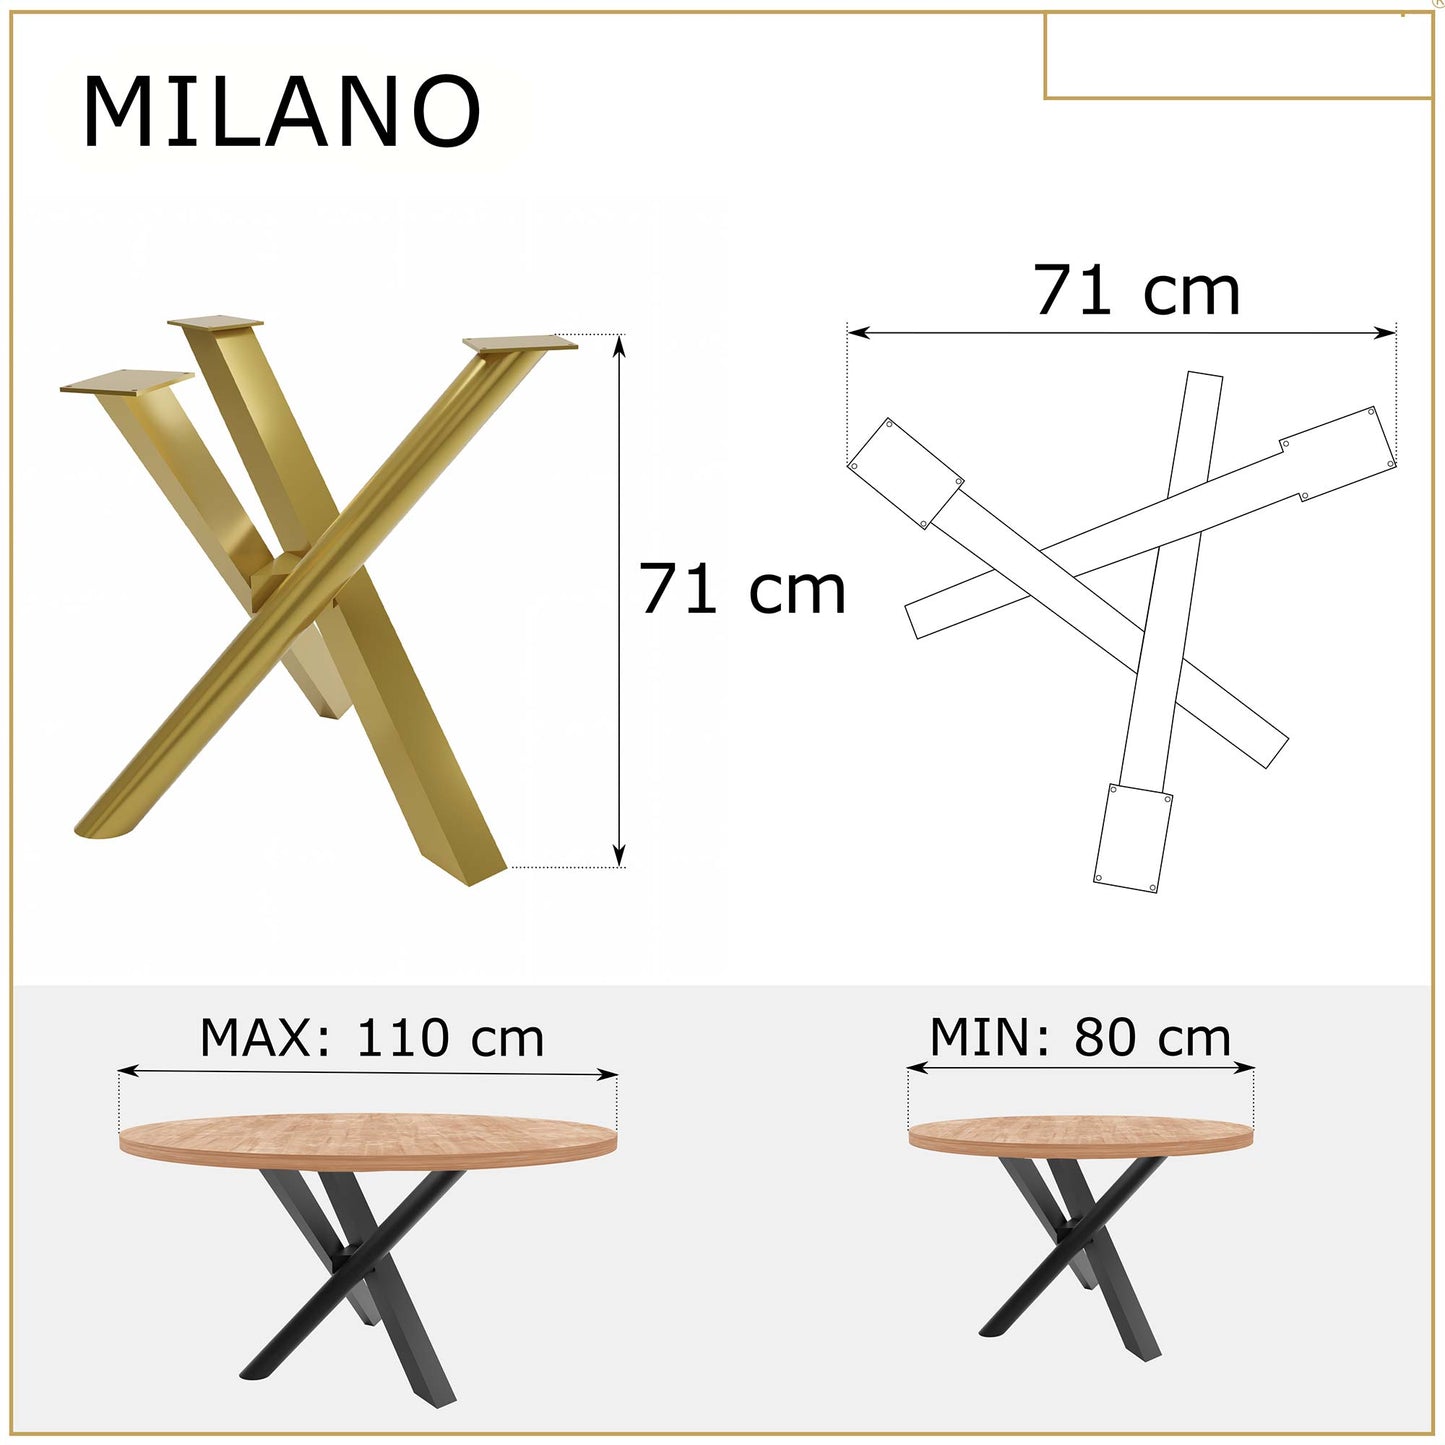 Metallinen Pöydänjalka Milano 8x6